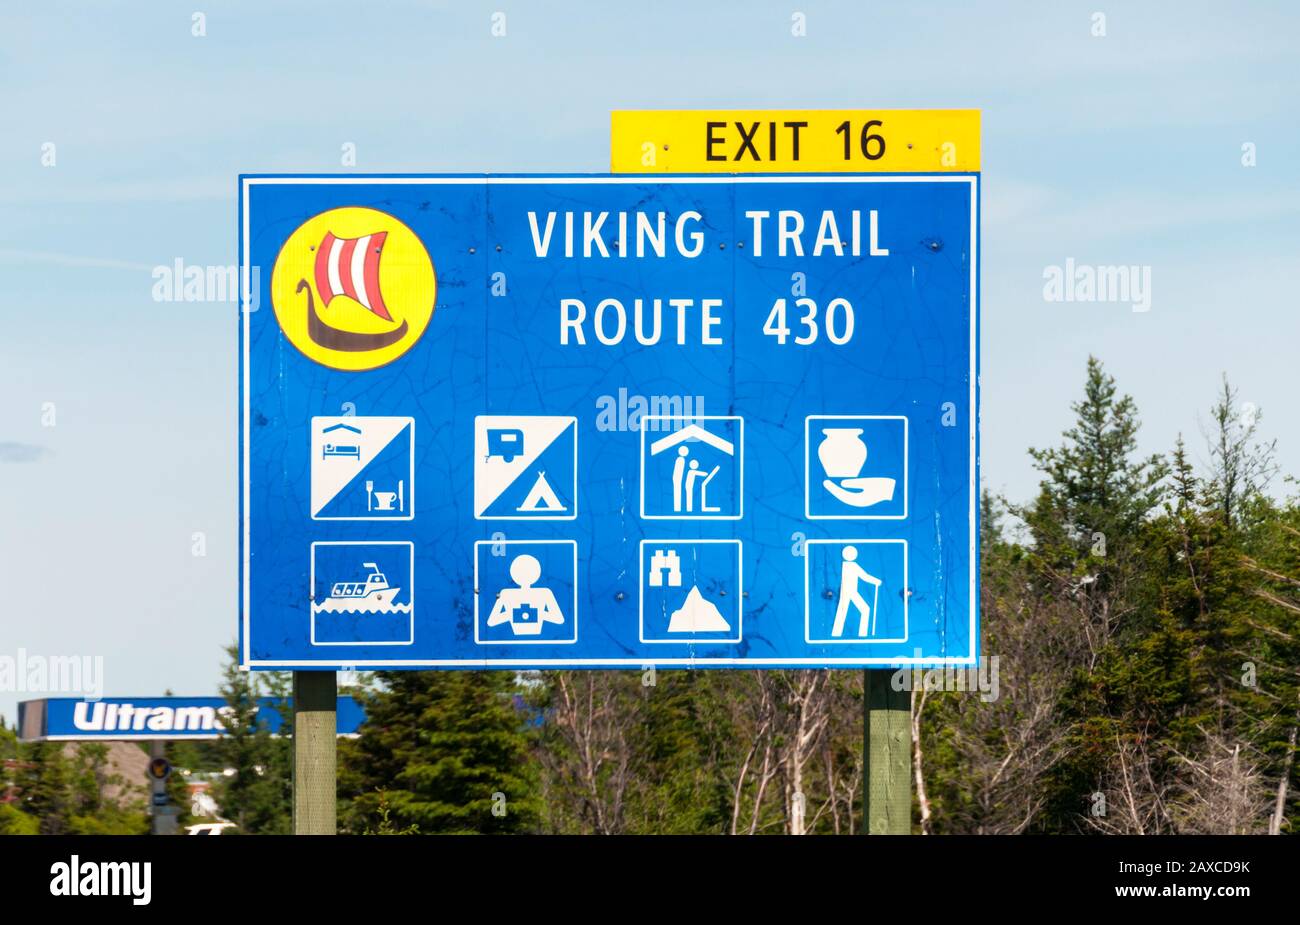 Señal de carretera para la Rote 430, el camino Viking, en Corner Brook, Newfoundland. Con iconos para varias atracciones turísticas. Foto de stock